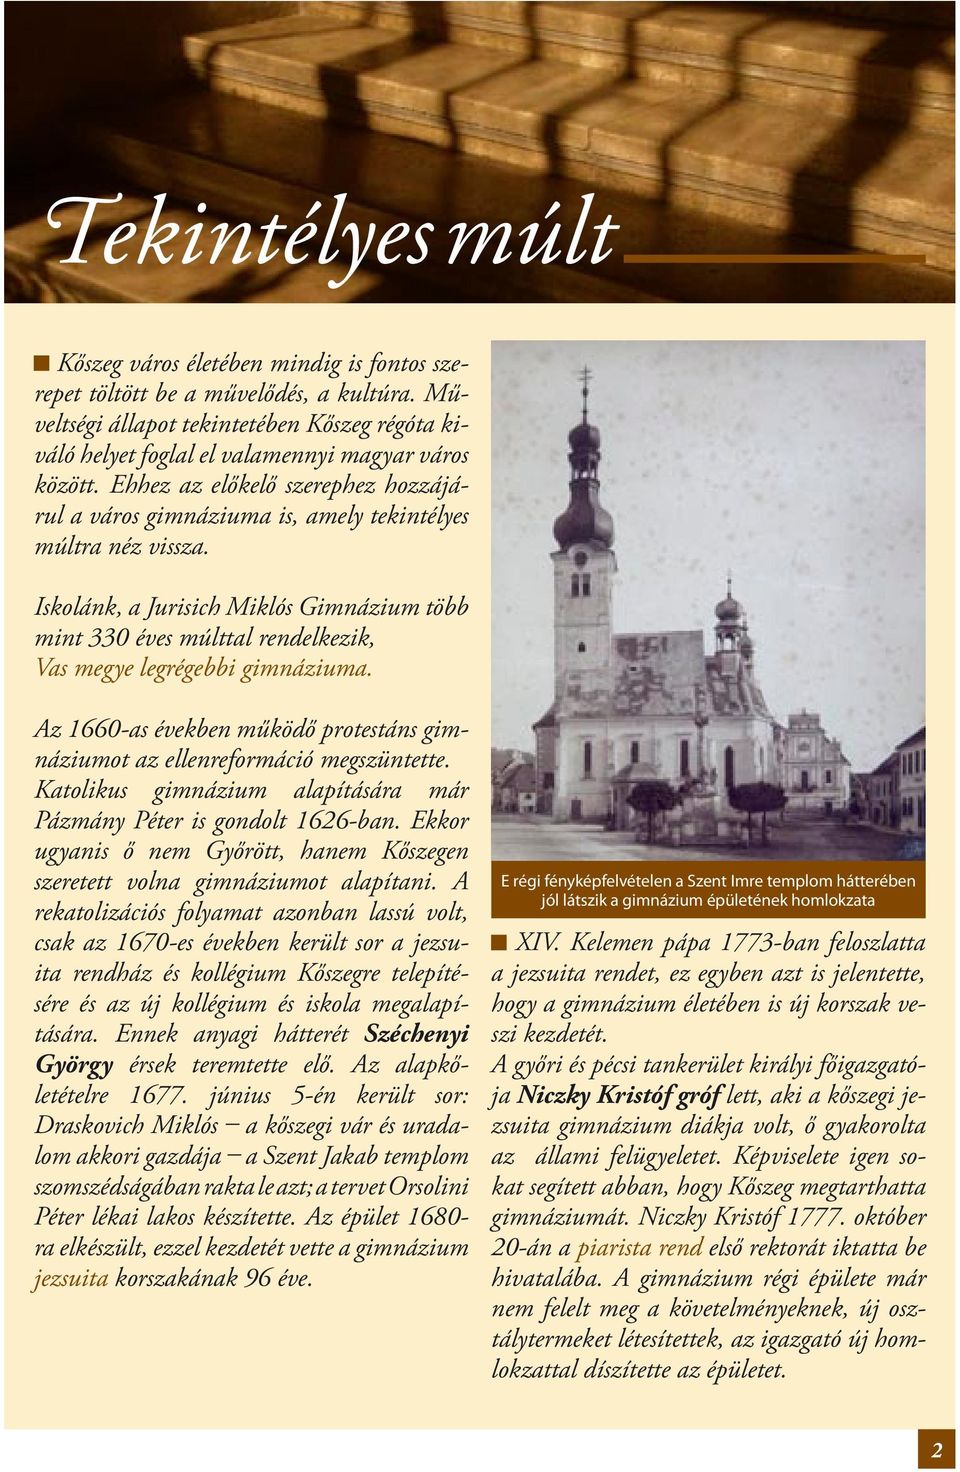 Iskolánk, a Jurisich Miklós Gimnázium több mint 330 éves múlttal rendelkezik, Vas megye legrégebbi gimnáziuma. Az 1660-as években működő protestáns gimnáziumot az ellenreformáció megszüntette.